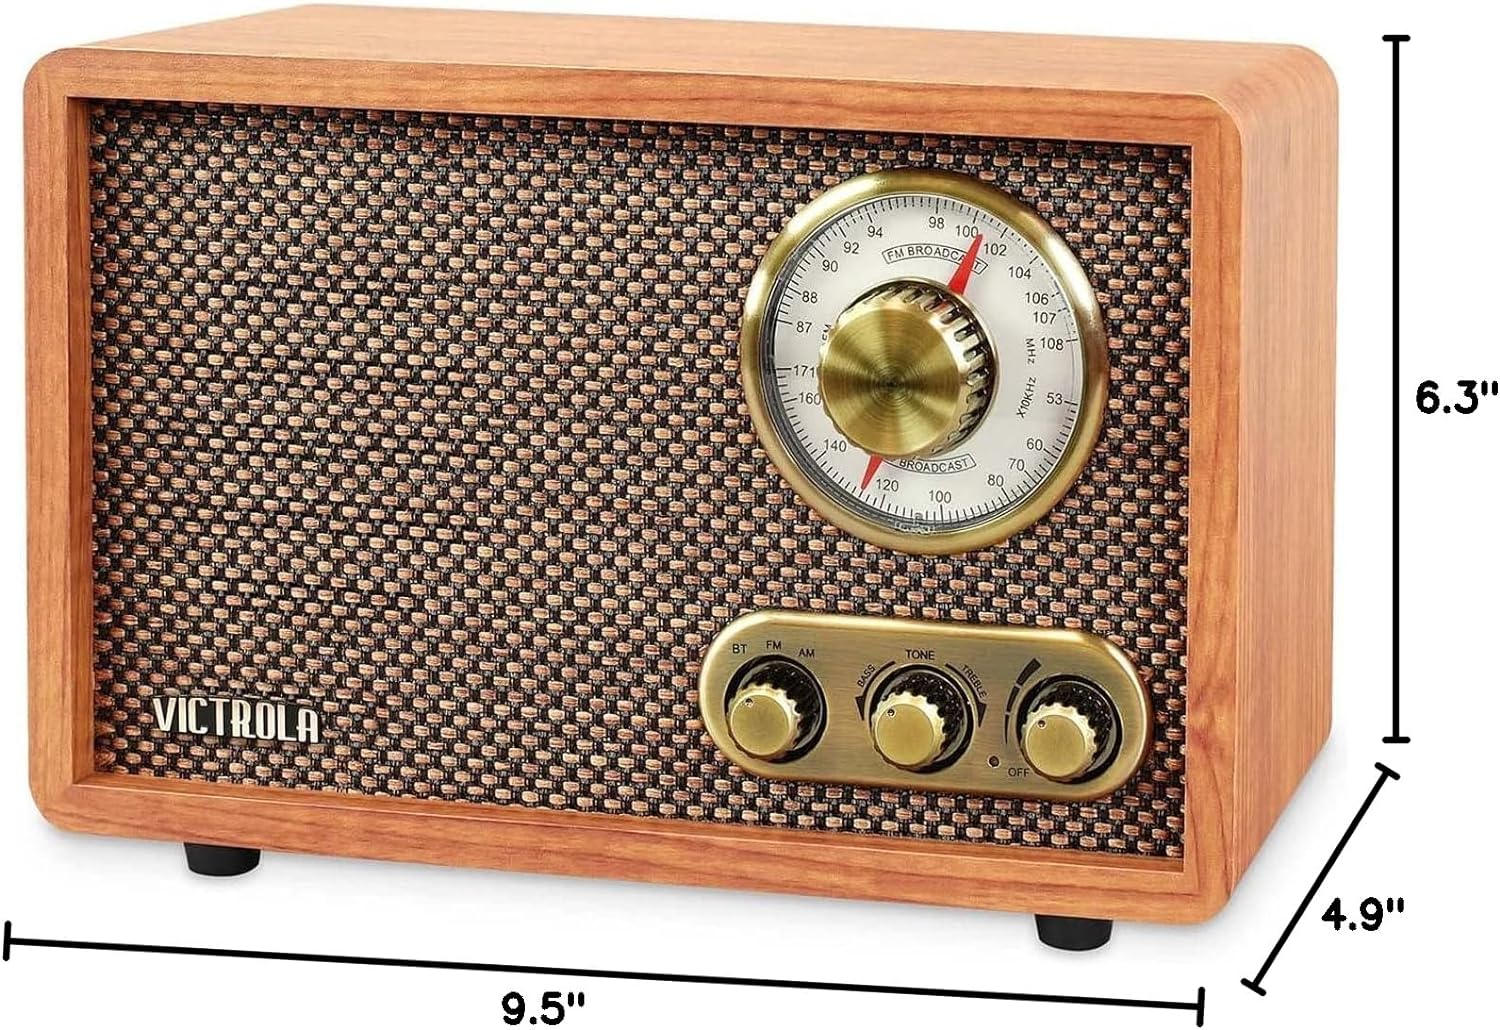  Radio AM FM de madera vintage con altavoz Bluetooth, pequeña  mesa de gabinete de madera retro portátil con la mejor recepción, esfera  giratoria, habla grande para el hogar, oficina, cocina 